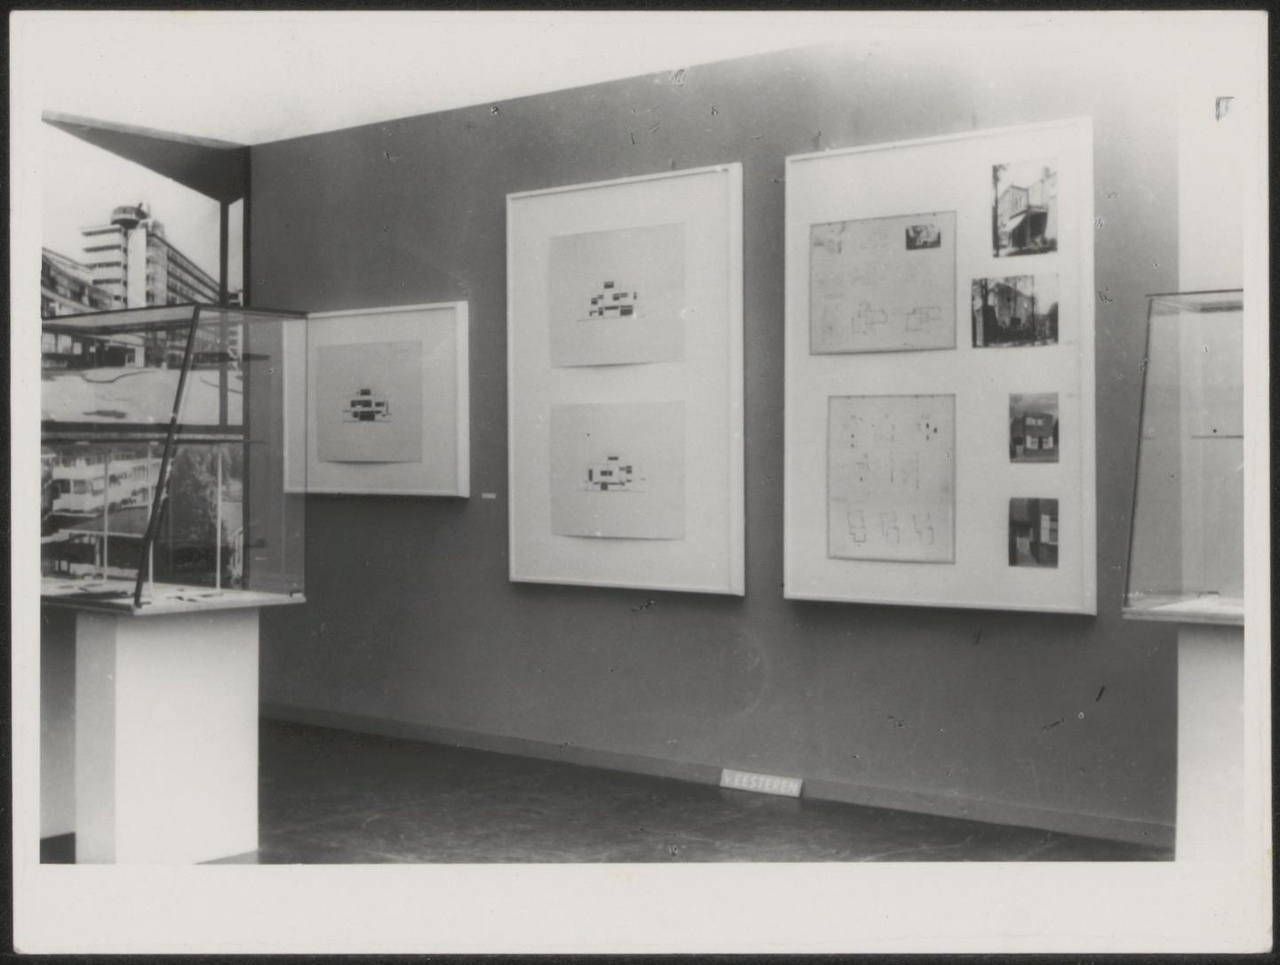 Afbeelding van tentoonstelling De Stijl SMA, 1951, zaal 4, grijze wand met drie panelen